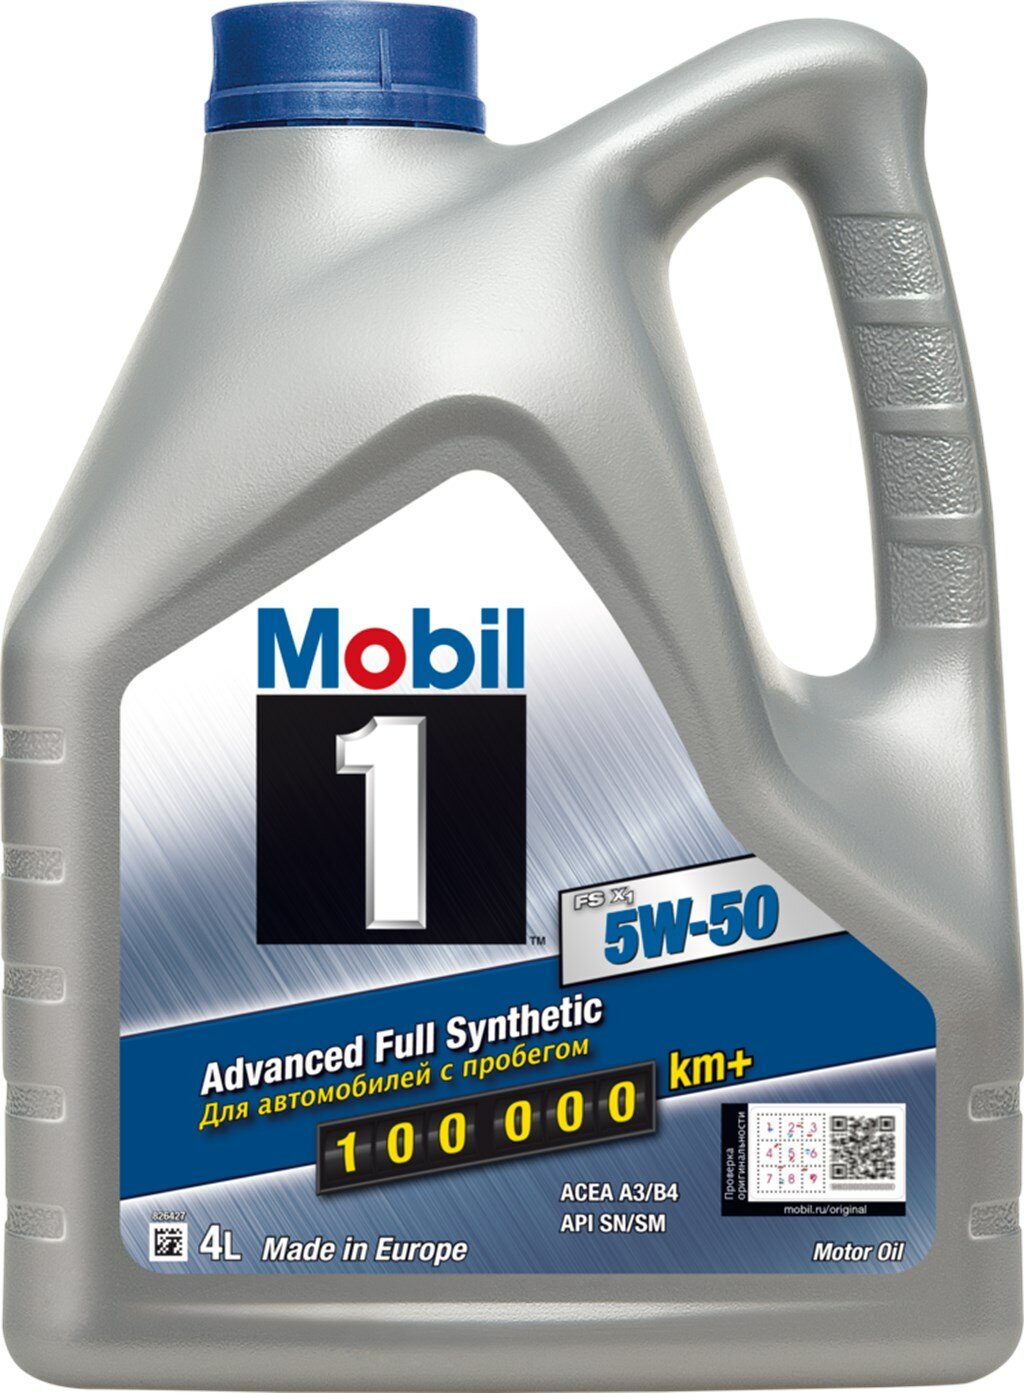 Моторное масло Mobil 1 синтетическое 1 FS X1 5W50 4л